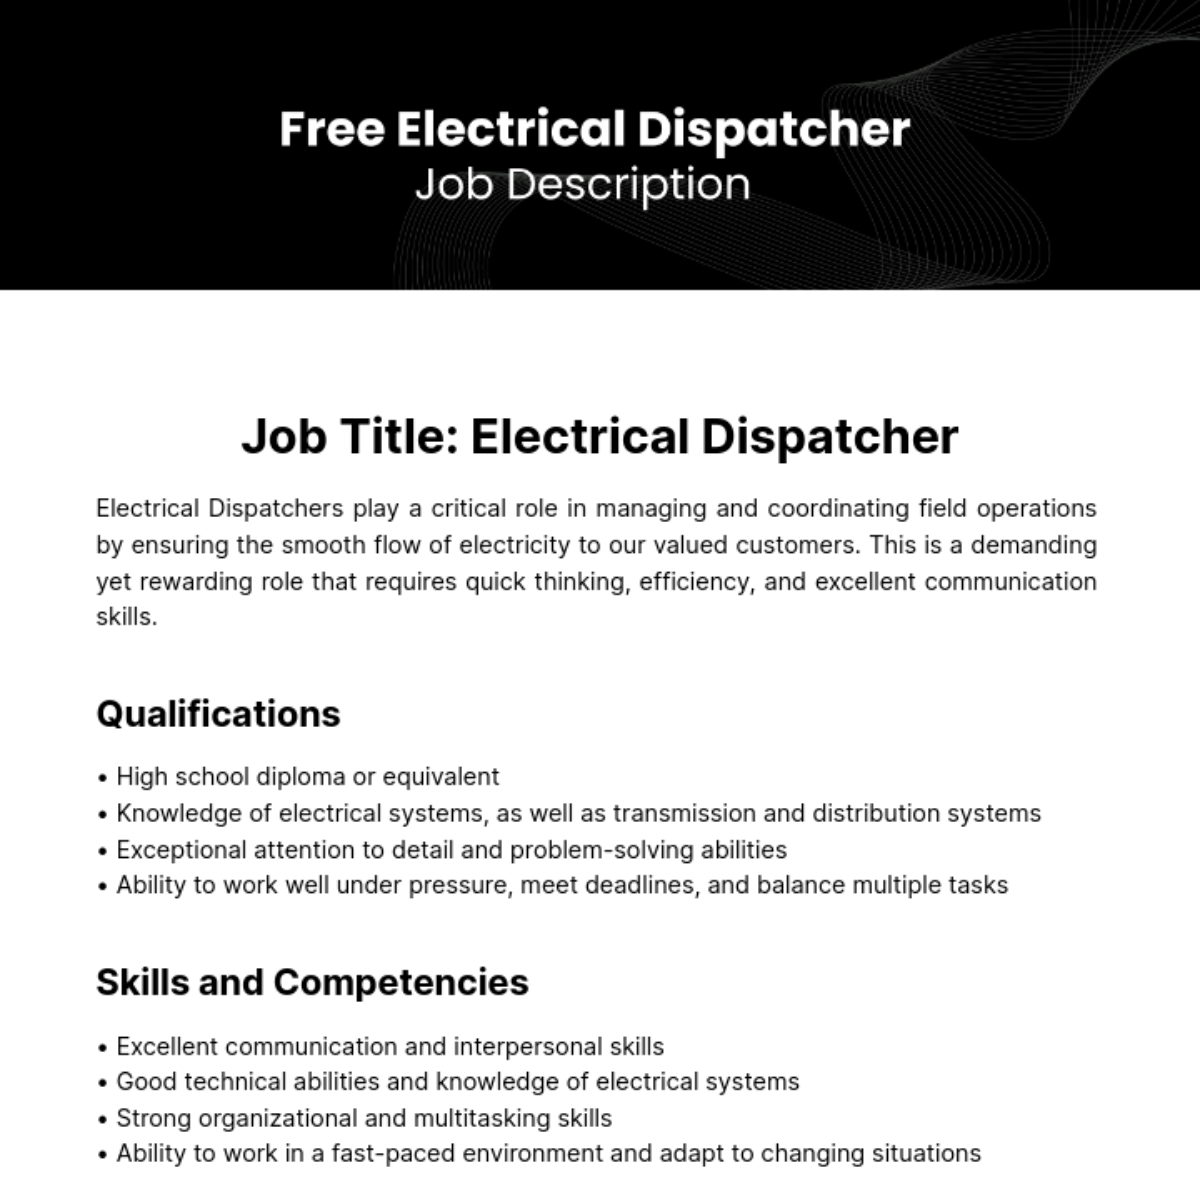 Free Electrical Dispatcher Job Description Template